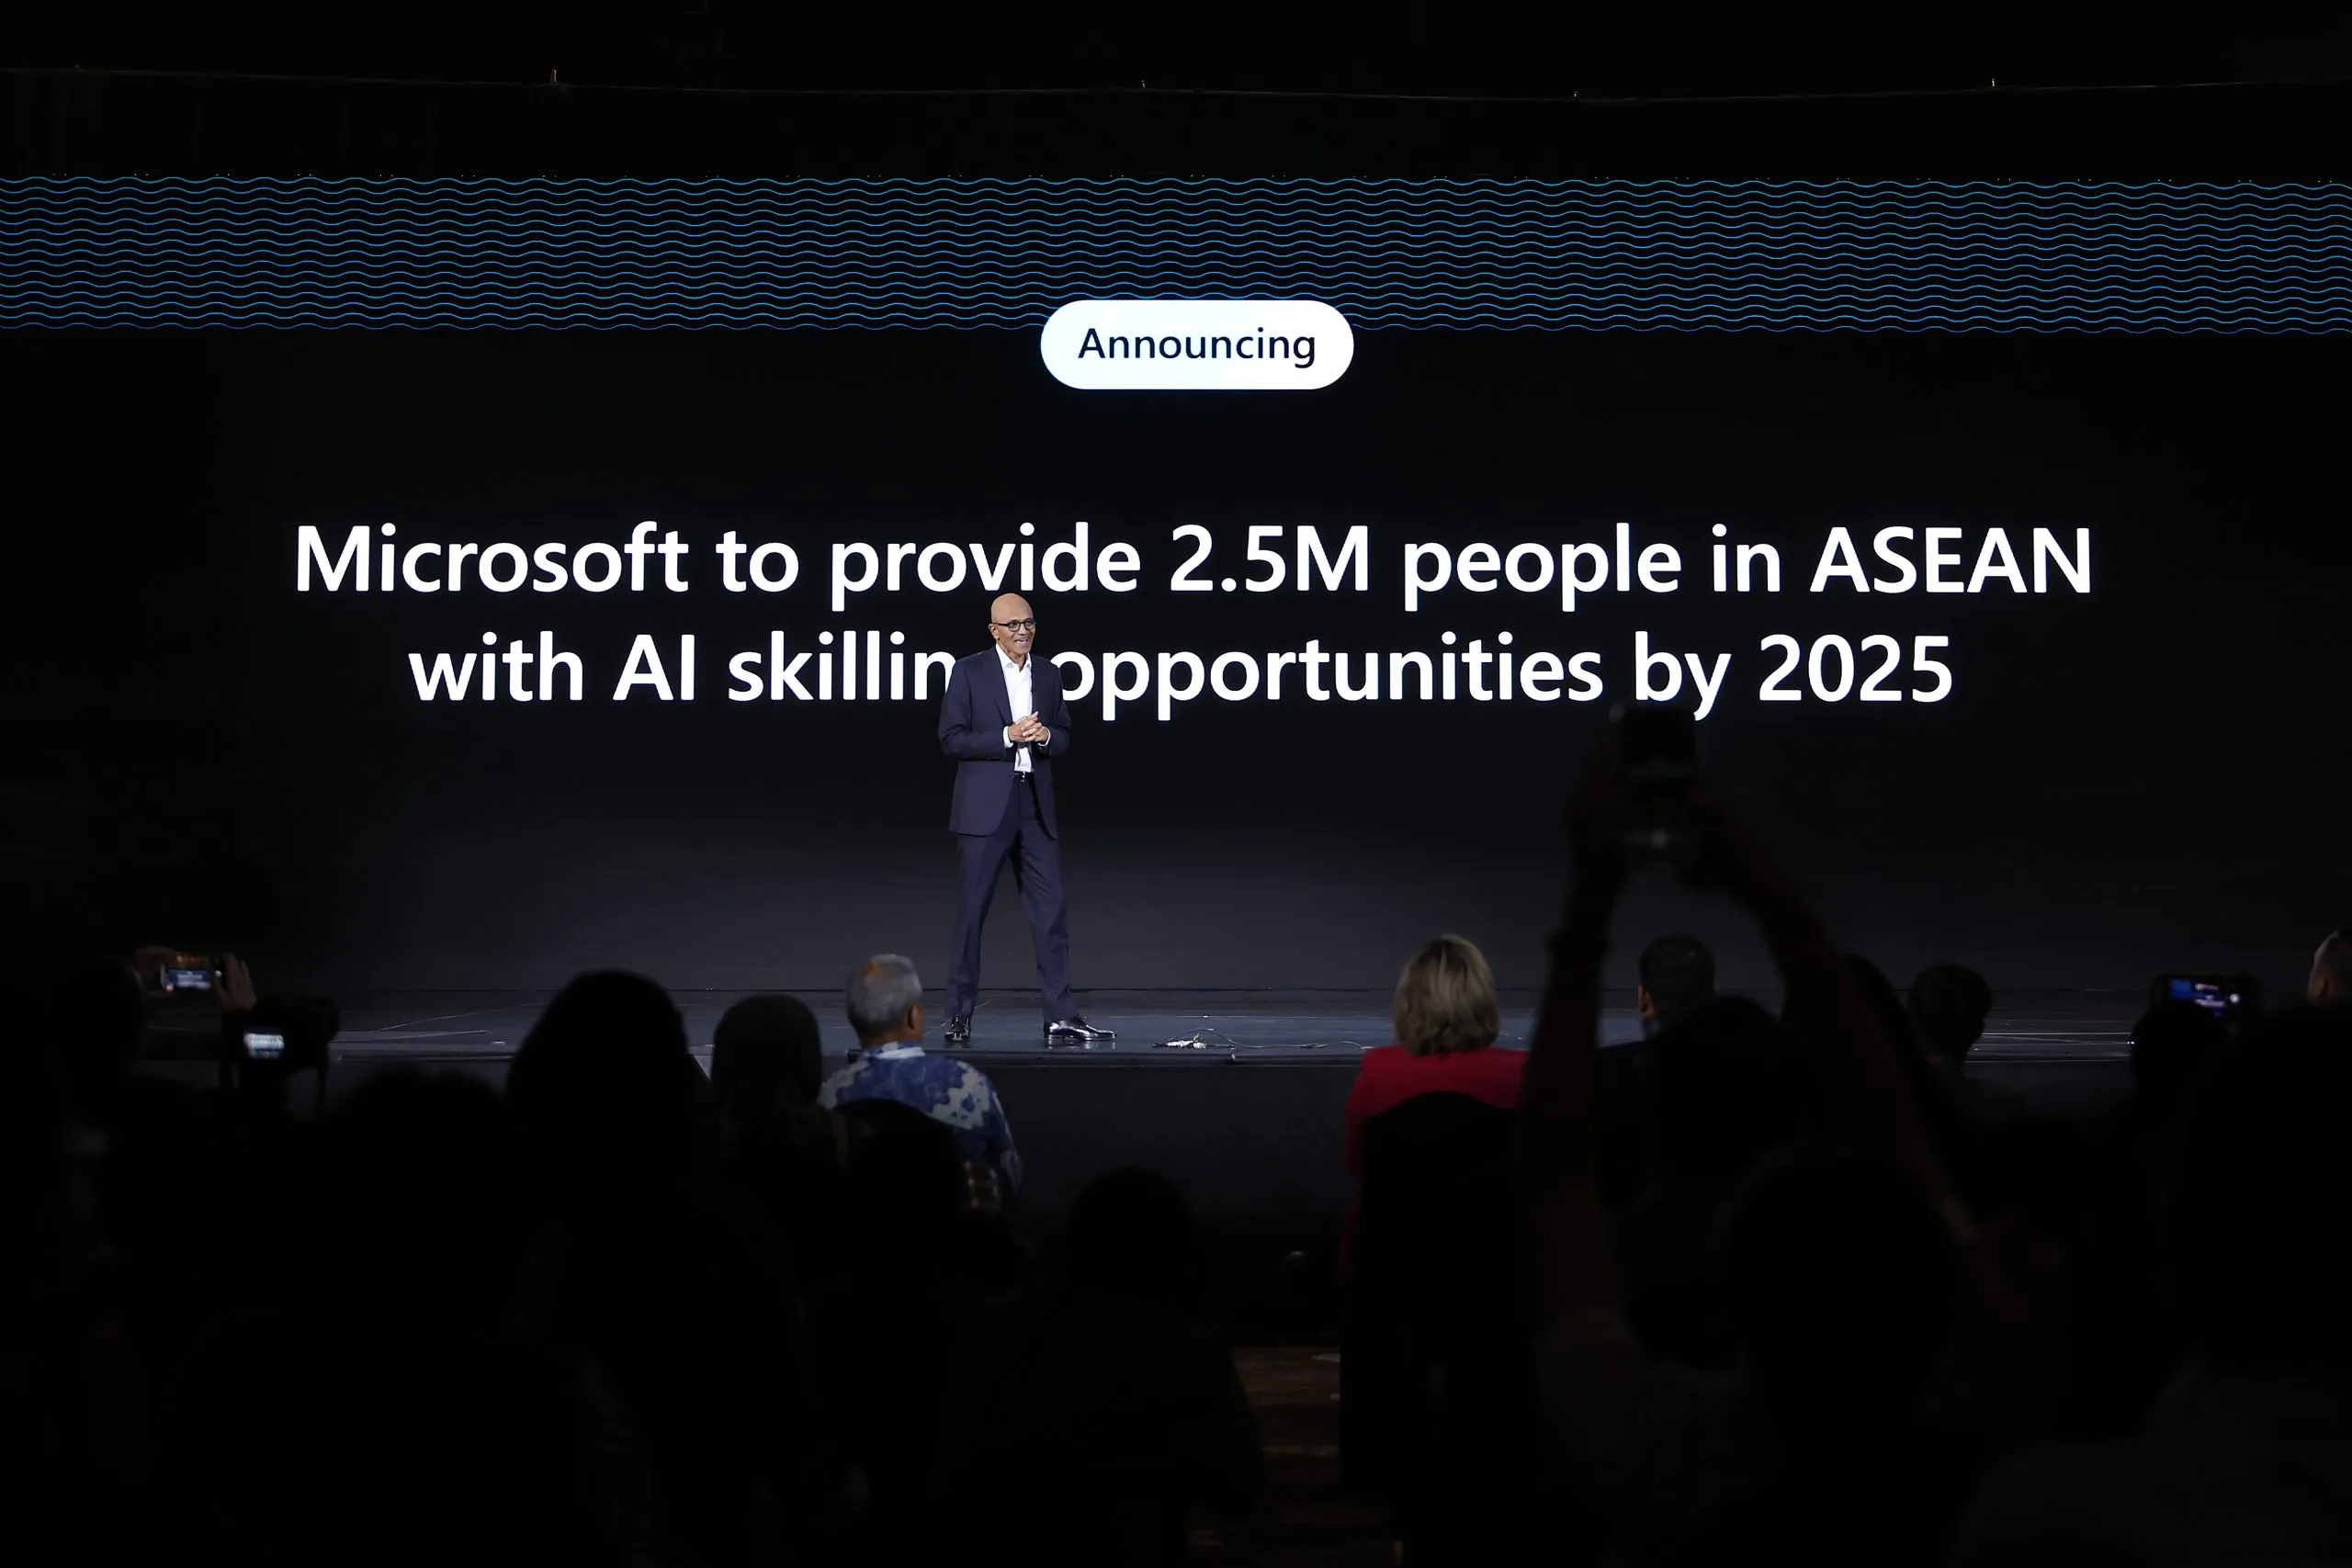 Microsoft cam kết trao quyền cho 2.5 triệu người ASEAN với kỹ năng AI vào năm 2025